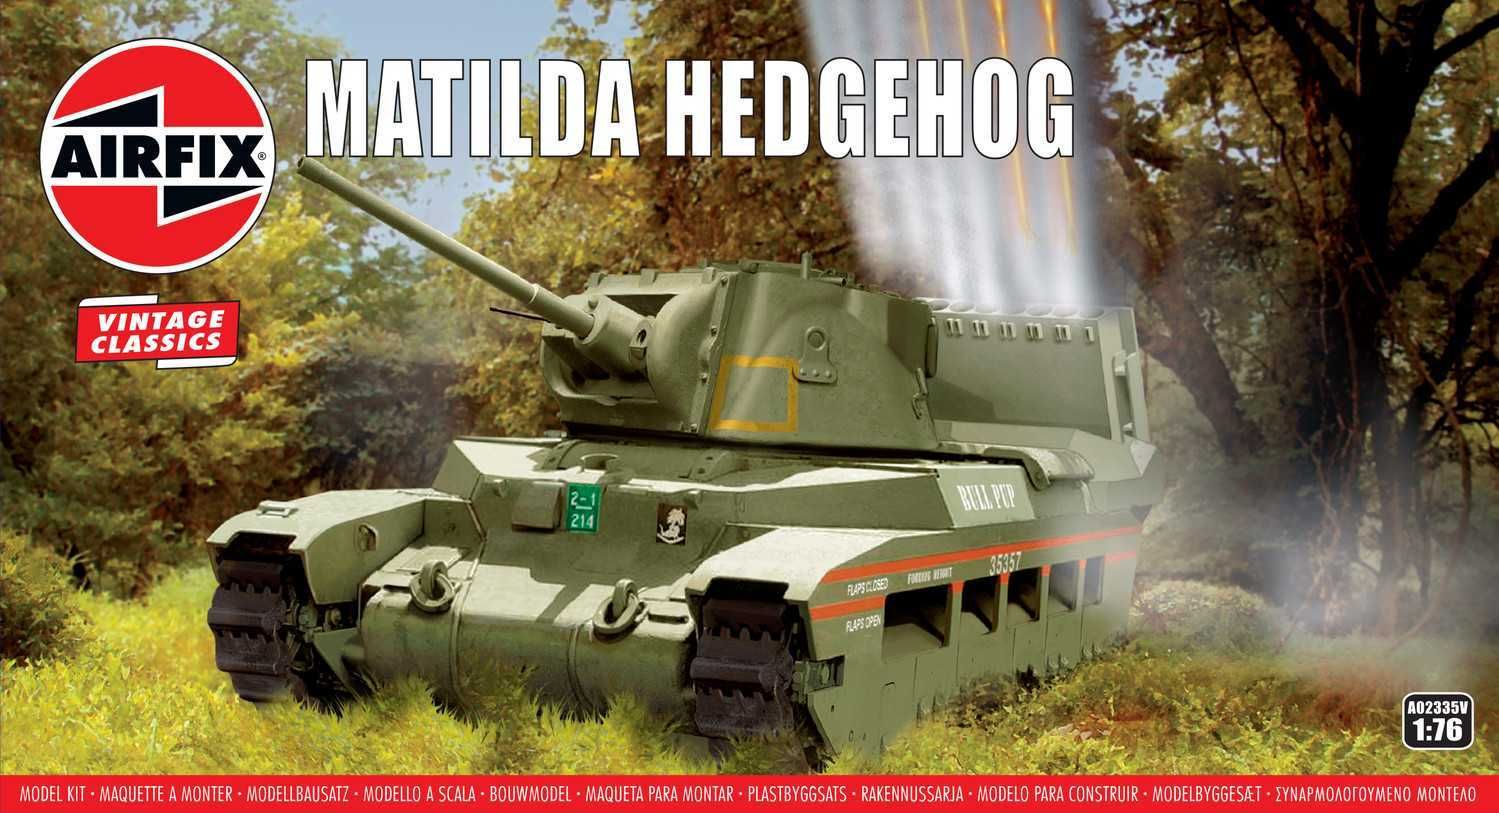 AIRFIX Classic Kit VINTAGE tank A02335V - Matilda Hedgehog Tank (1:76) - obrázek 1